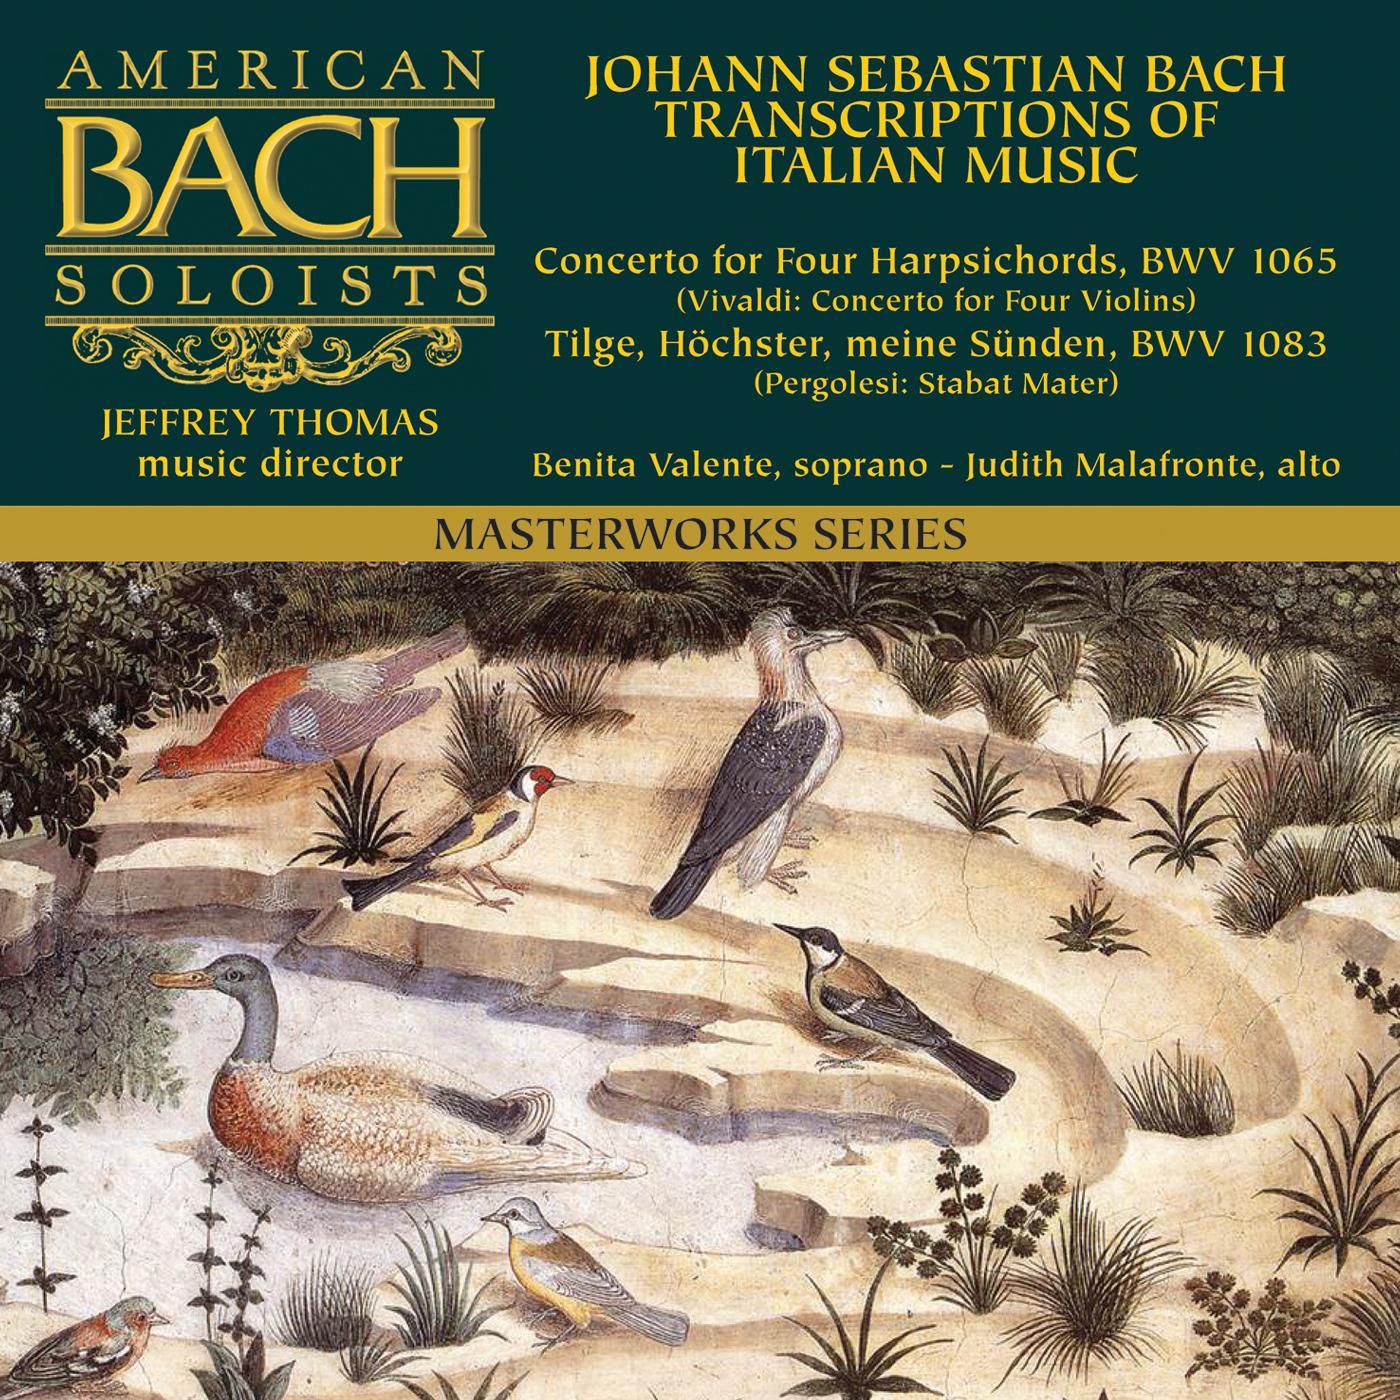 Bach Italian Transcriptions: Concerto for Four Harpsichords Vivaldi  Tilge, H chster, meine Sü nden Pergolesi